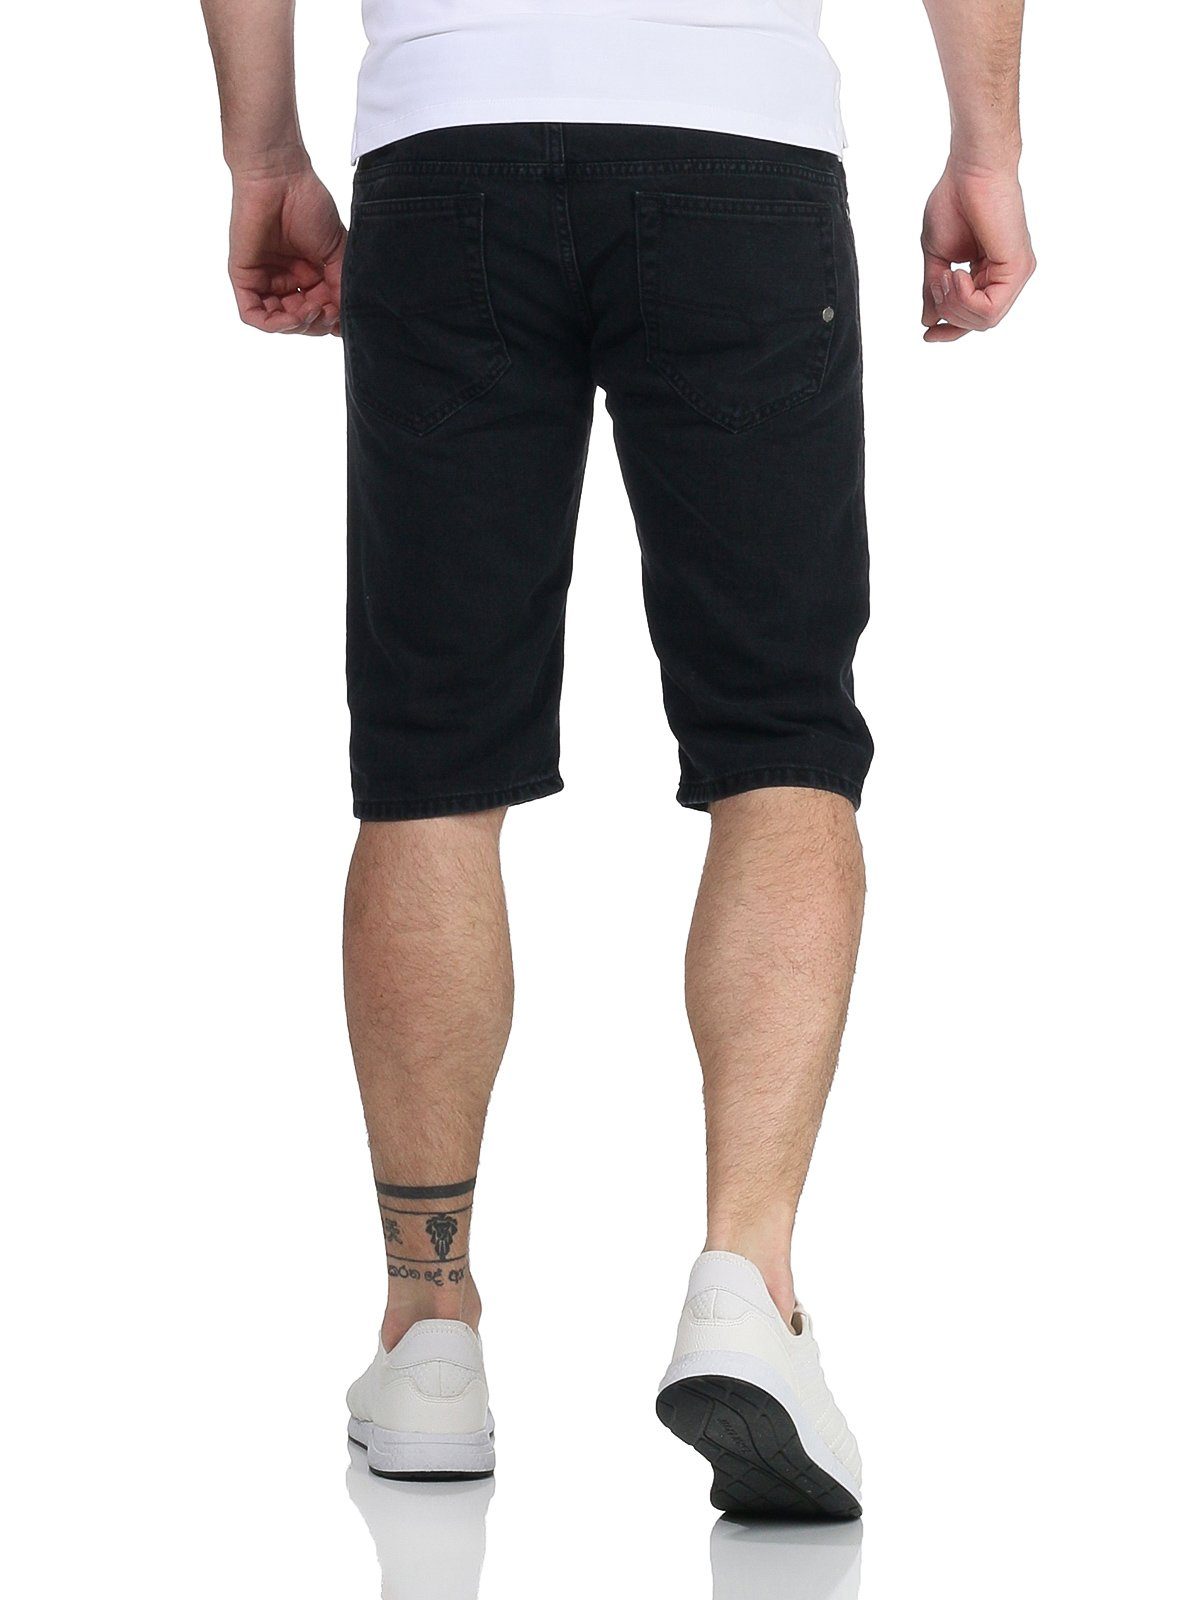 Jeansshorts kurze Shorts Used-Look R98V4 RG48R Hose Shorts, Jeans Herren Diesel Kroshort Schwarz dezenter